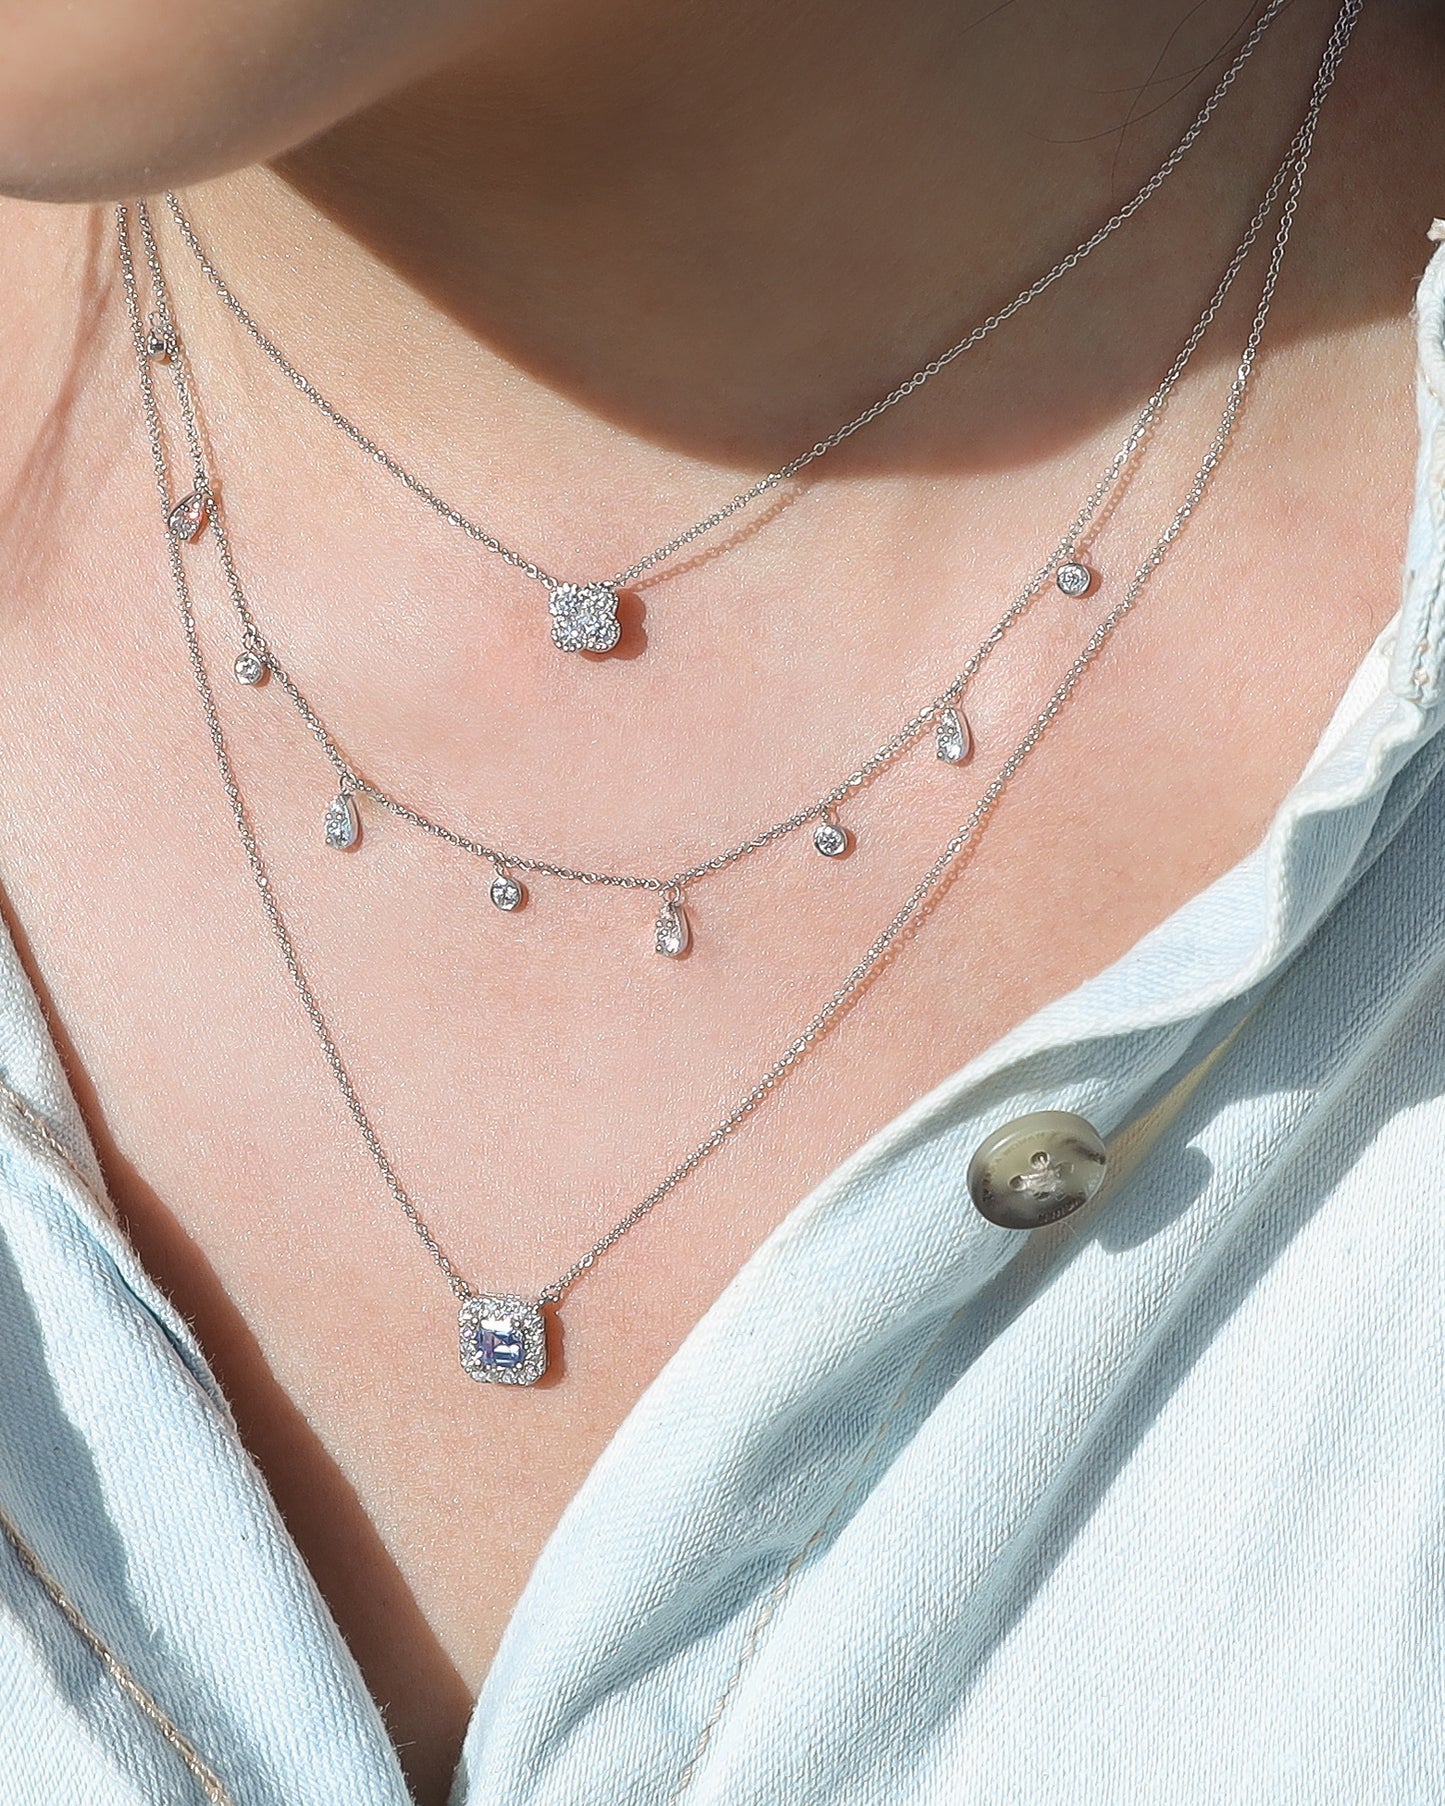 Noe Diamond Charm Necklace